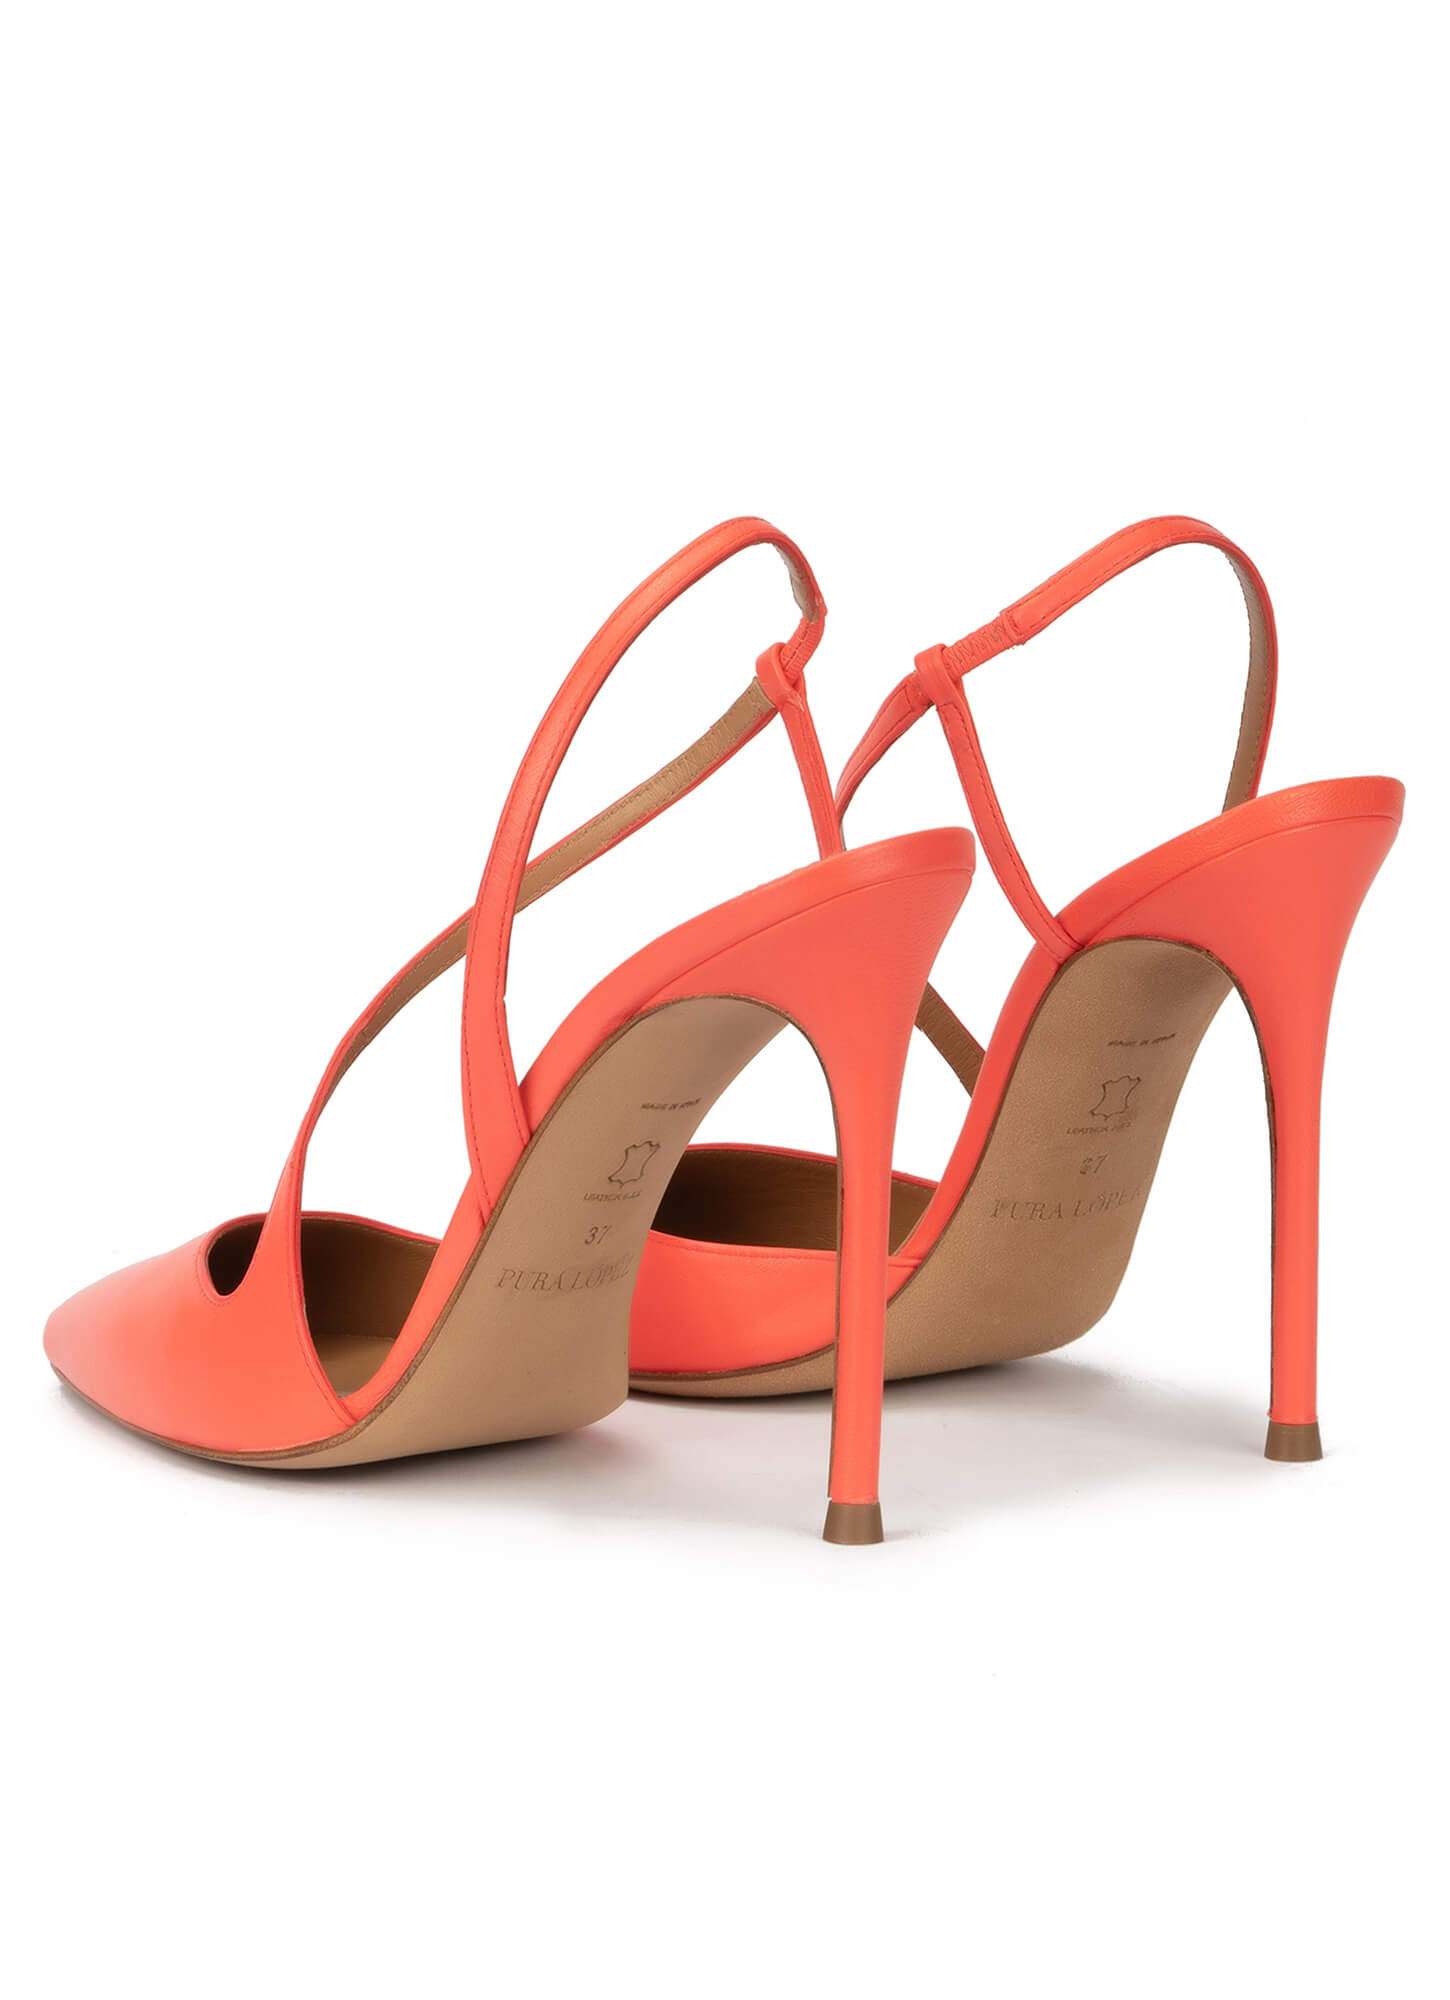 Zapatos destalonados con tacón stiletto en piel color coral . PURA